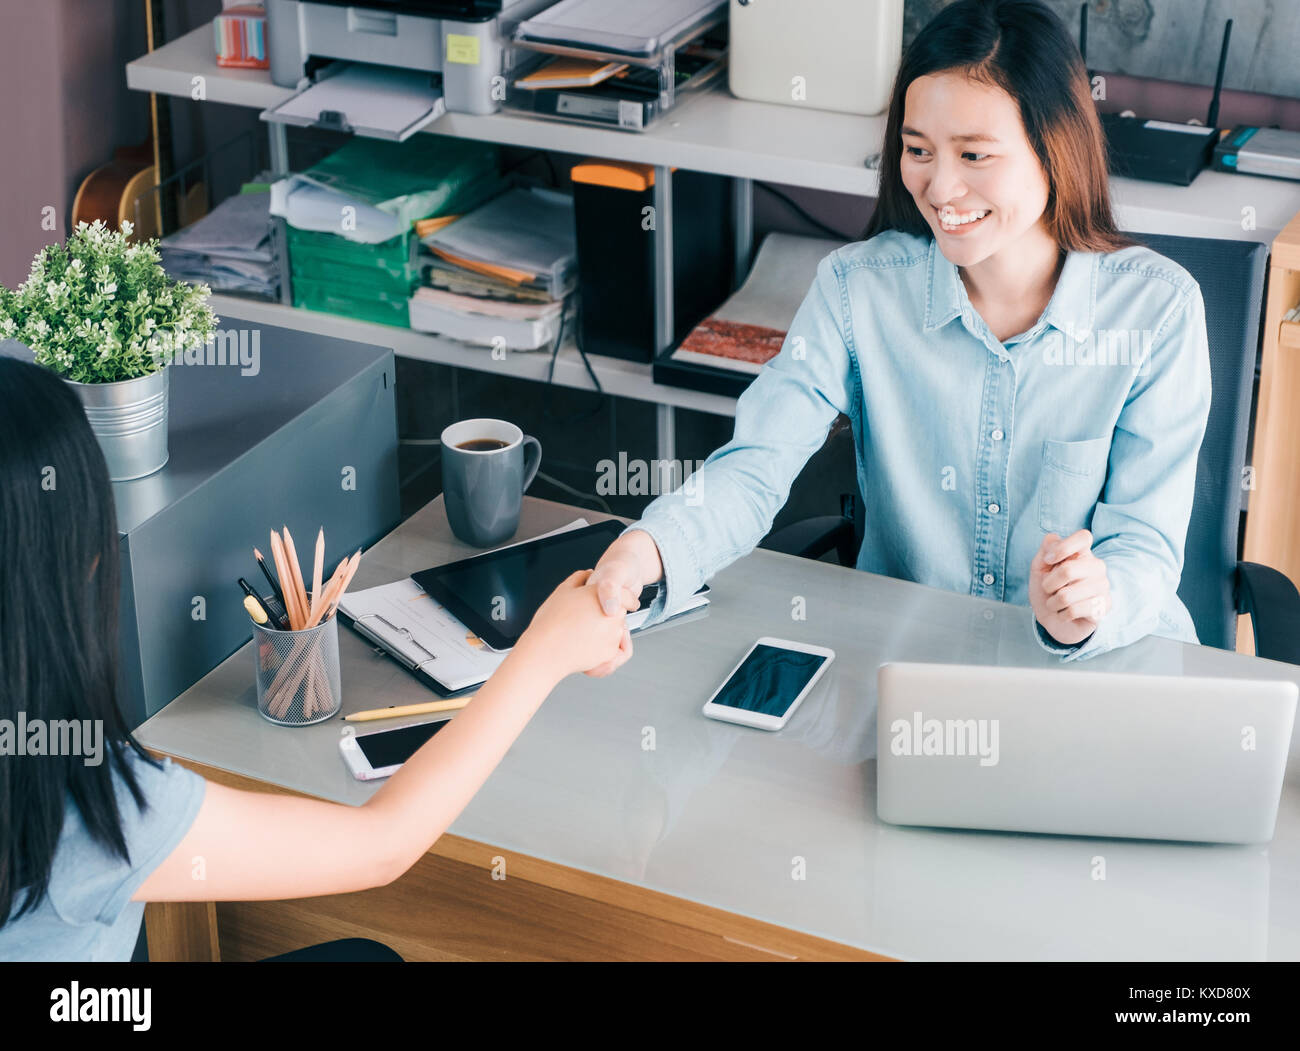 Deux businesswoman handshake in réunion causale au bureau à domicile bureau sur les meubles,business,le travail d'équipe Vue de dessus des affaires asiatiques toget consulting Banque D'Images